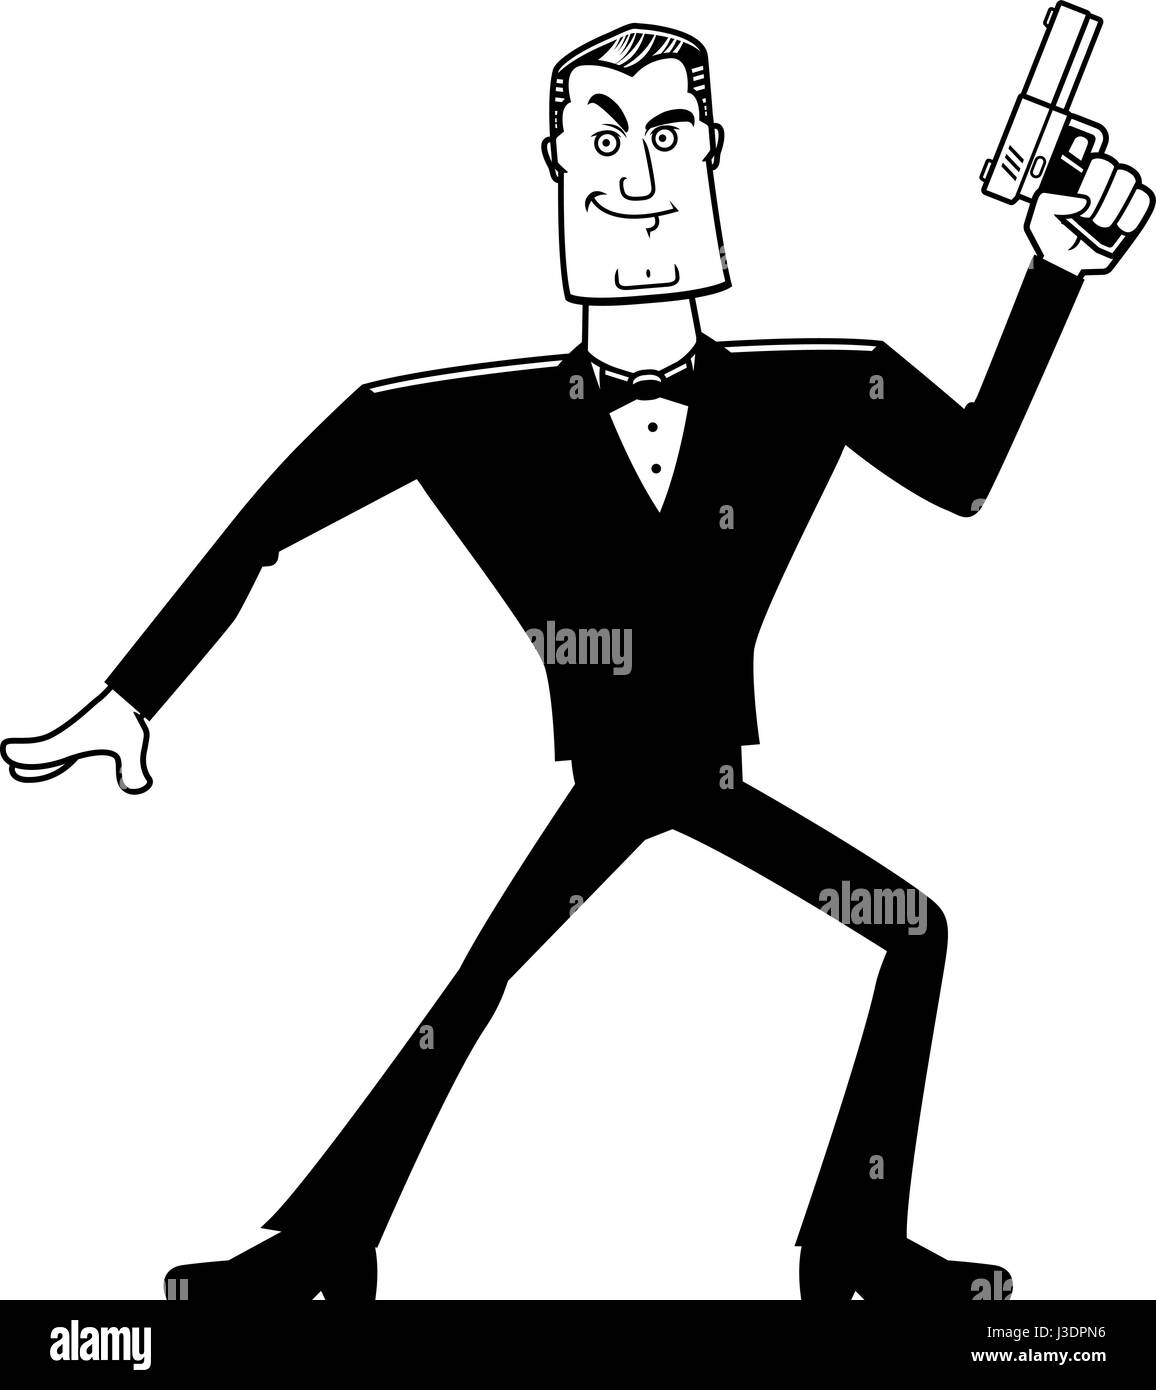 Ein Cartoon Illustration ein Spion in einem Smoking mit einer Pistole. Stock Vektor